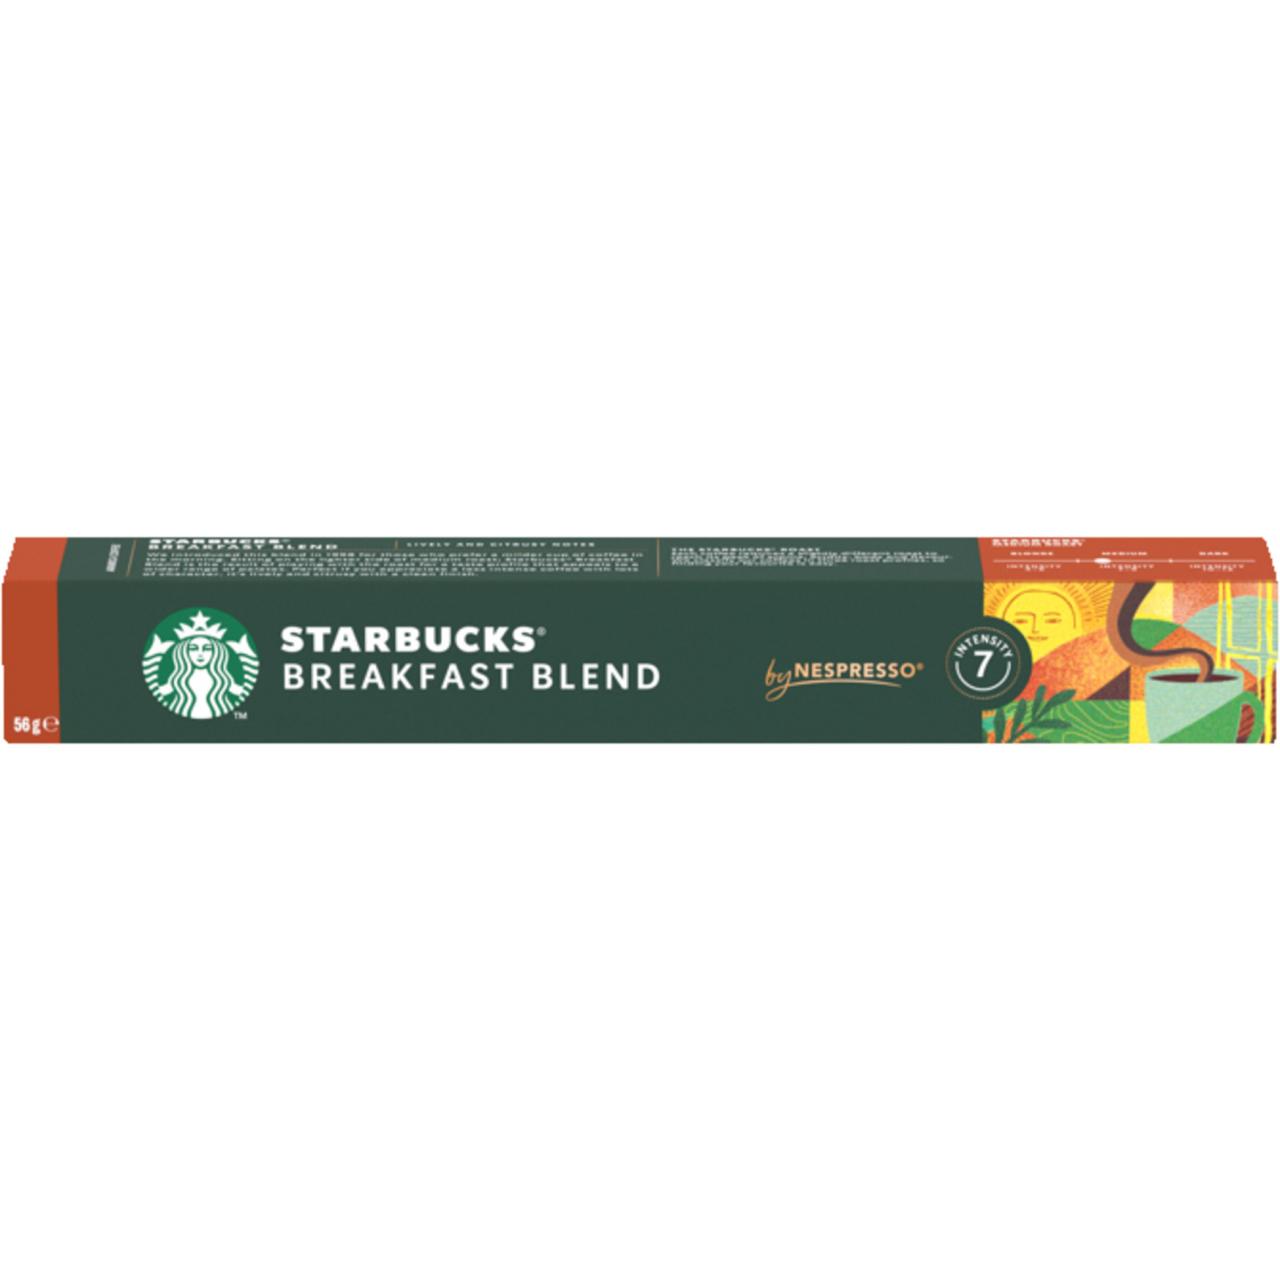 Starbucks Kapsel Breakfast Blend  56g